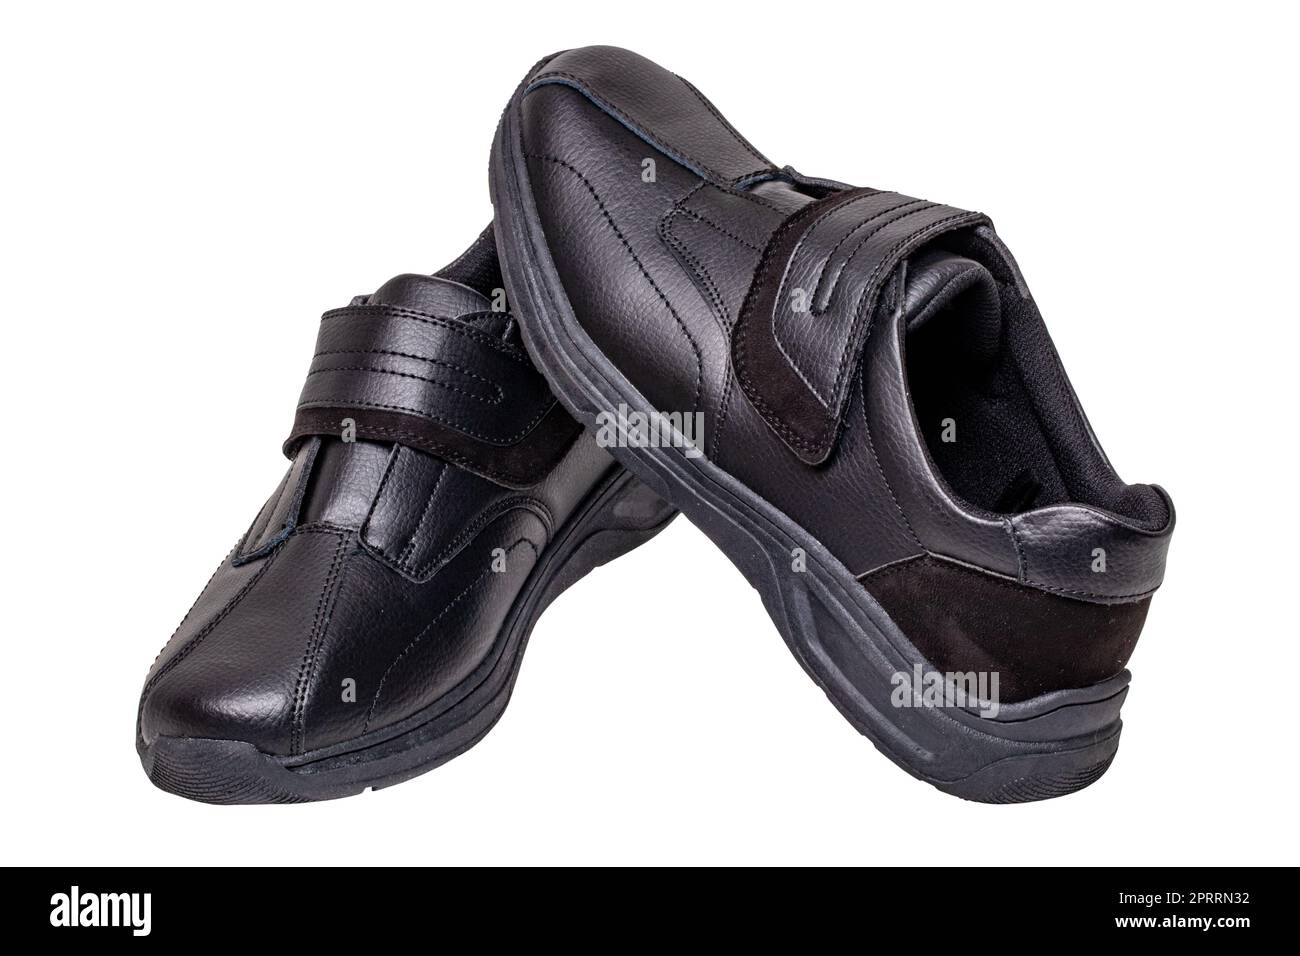 https://c8.alamy.com/compes/2prrn32/mans-zapatos-negros-primer-plano-de-un-par-de-zapatillas-de-deporte-negras-o-zapatos-deportivos-aislados-sobre-un-fondo-blanco-trayecto-de-delimitacion-calzado-para-hombre-elegante-y-de-moda-macro-2prrn32.jpg